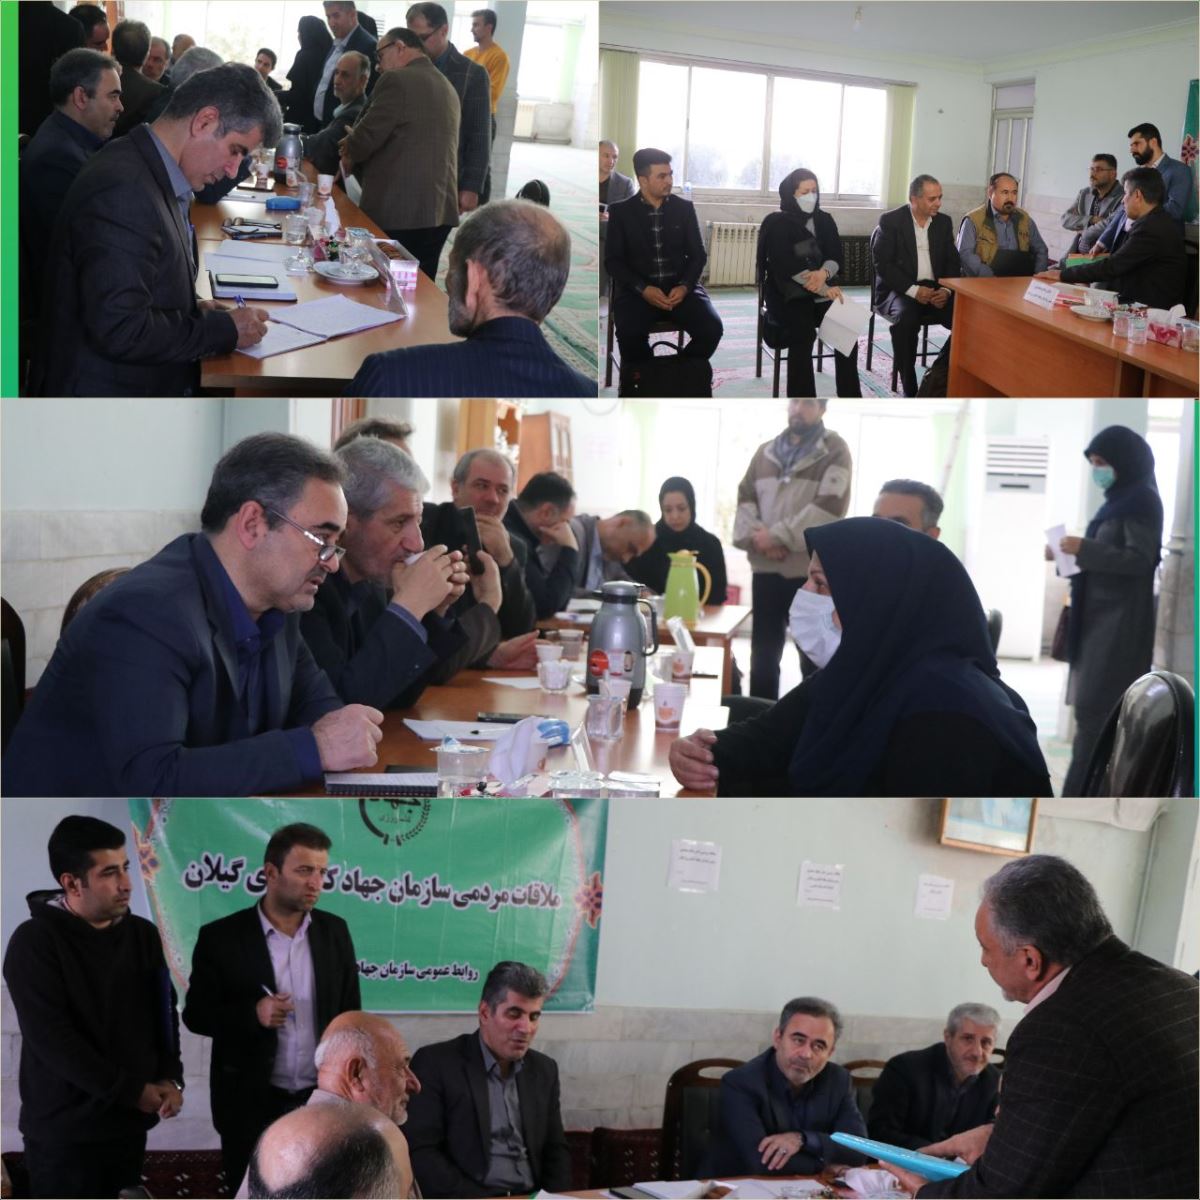 برنامه هفتگی ملاقات عمومی با رئیس سازمان جهاد کشاورزی استان گیلان برگزار شد.